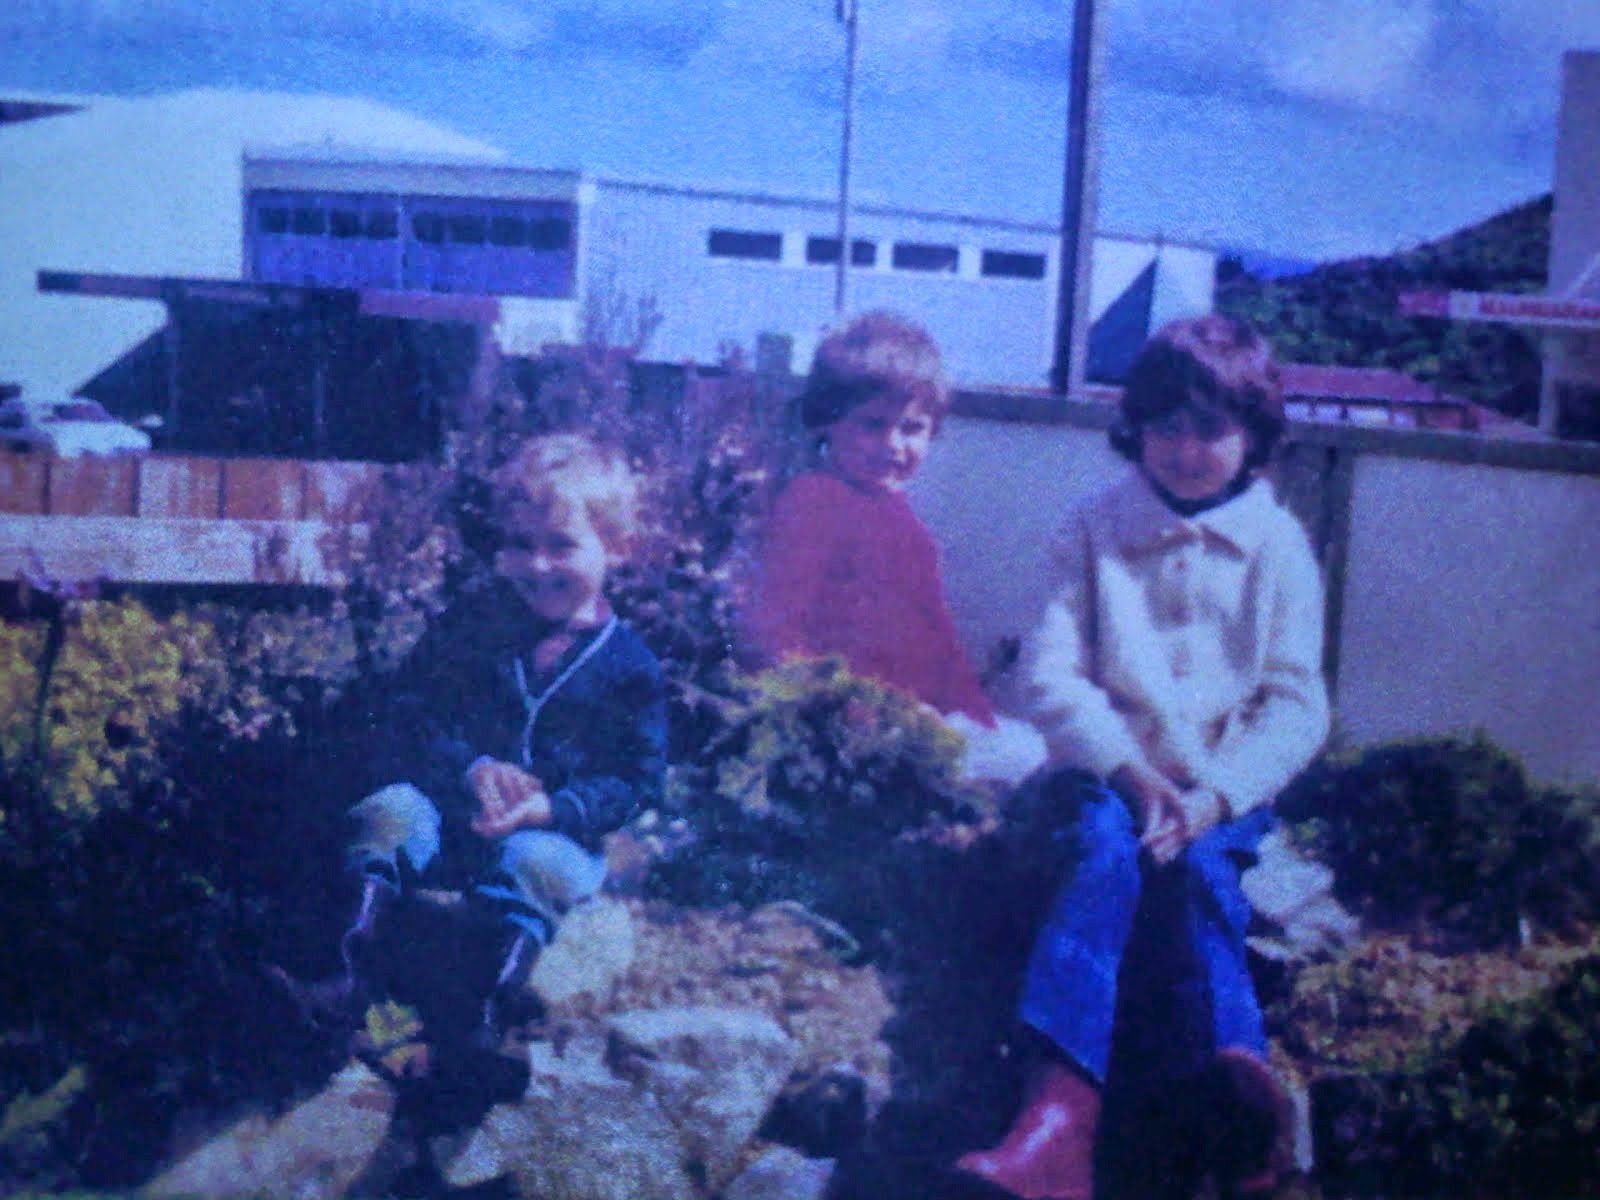 Myself, my brother, and sister, circa 1978.